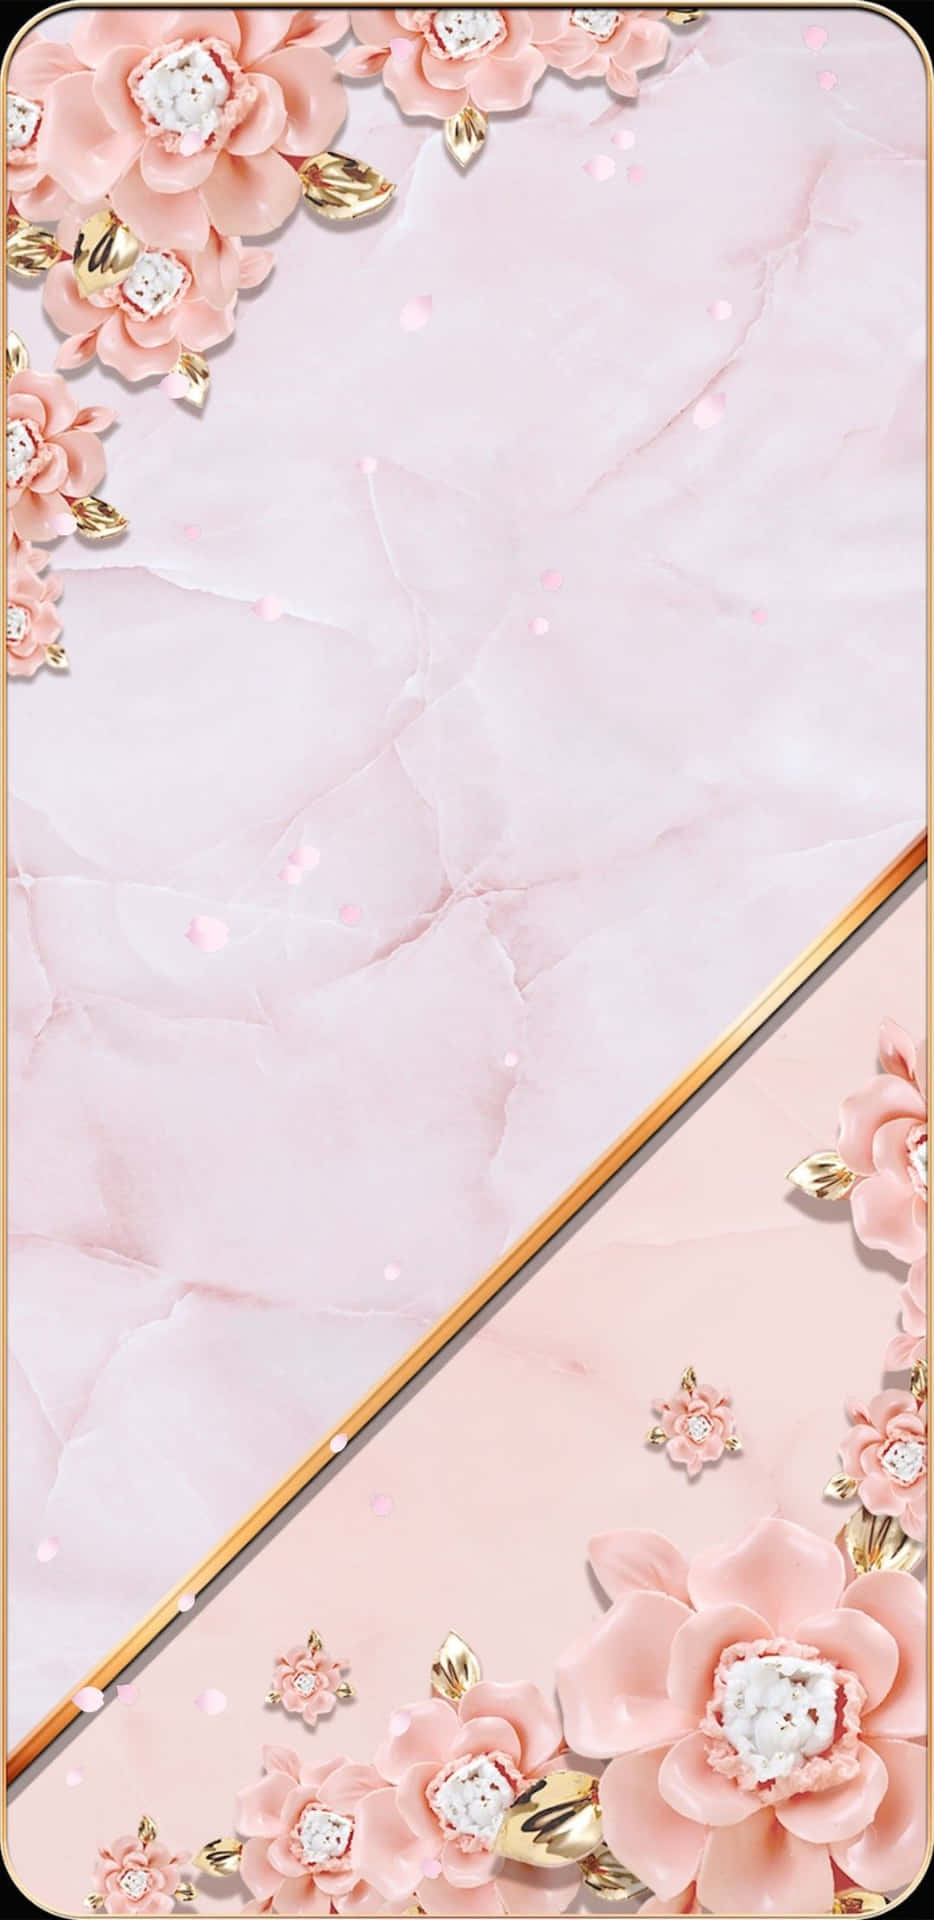 Rose Gold Phone Wallpaper